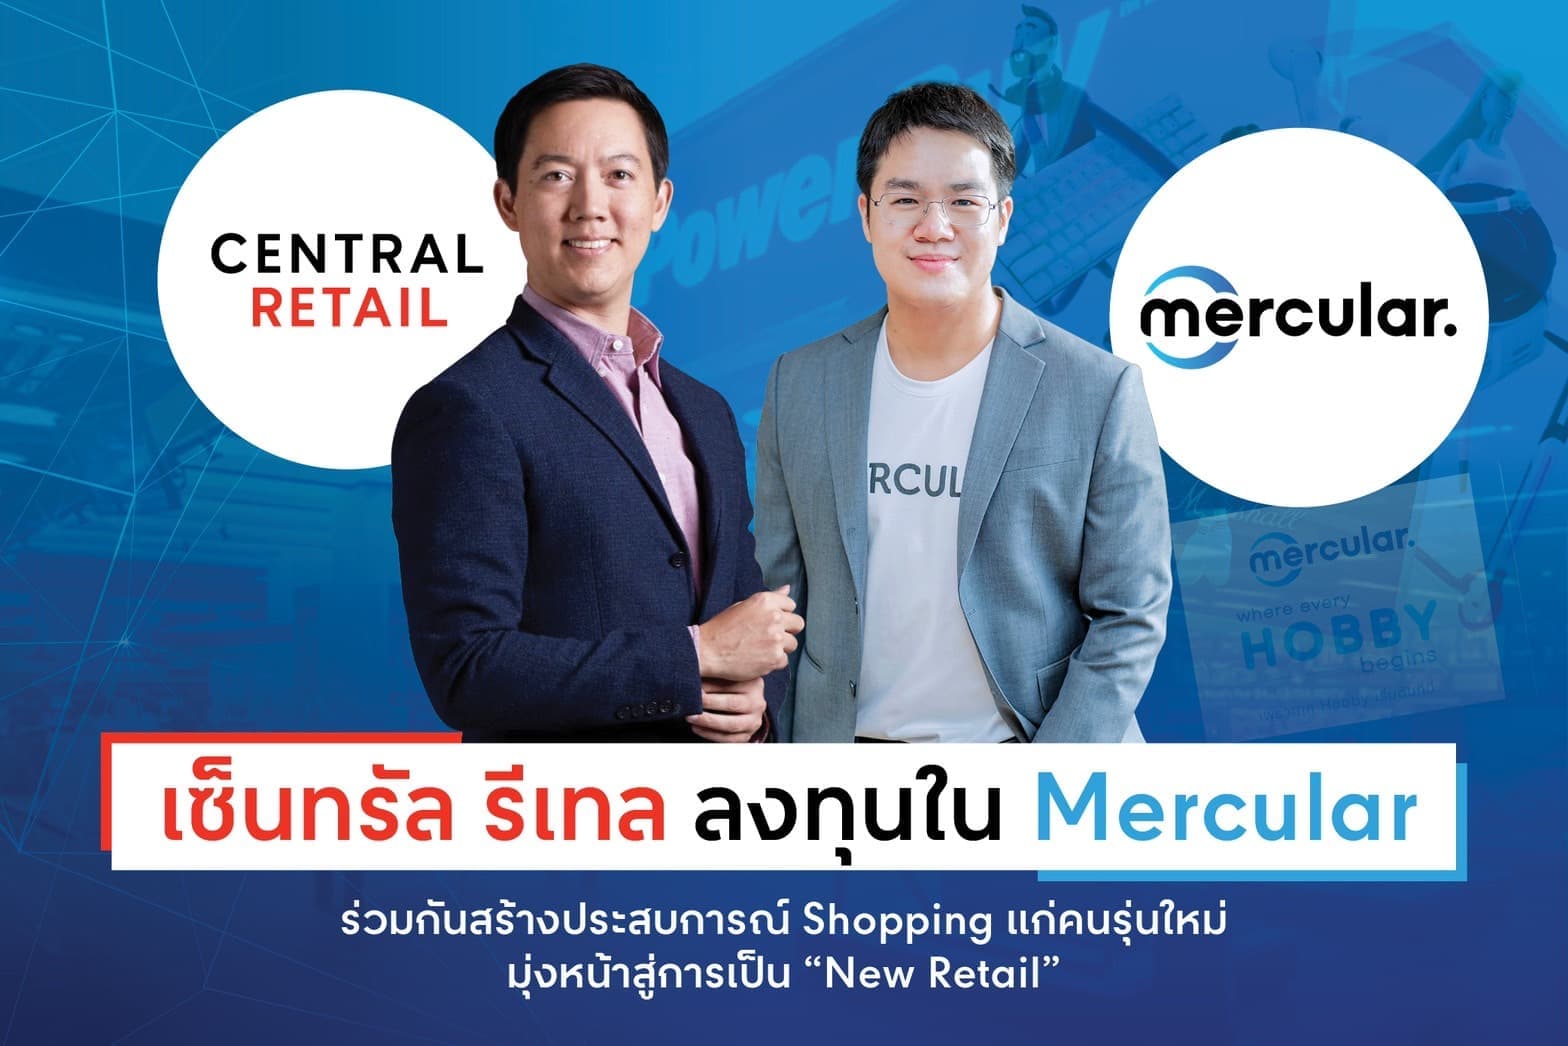 เซ็นทรัล รีเทล ลงทุนใน Mercular  ร่วมกันสร้างประสบการณ์ Shopping แก่คนรุ่นใหม่ มุ่งหน้าสู่การเป็น “New Retail”